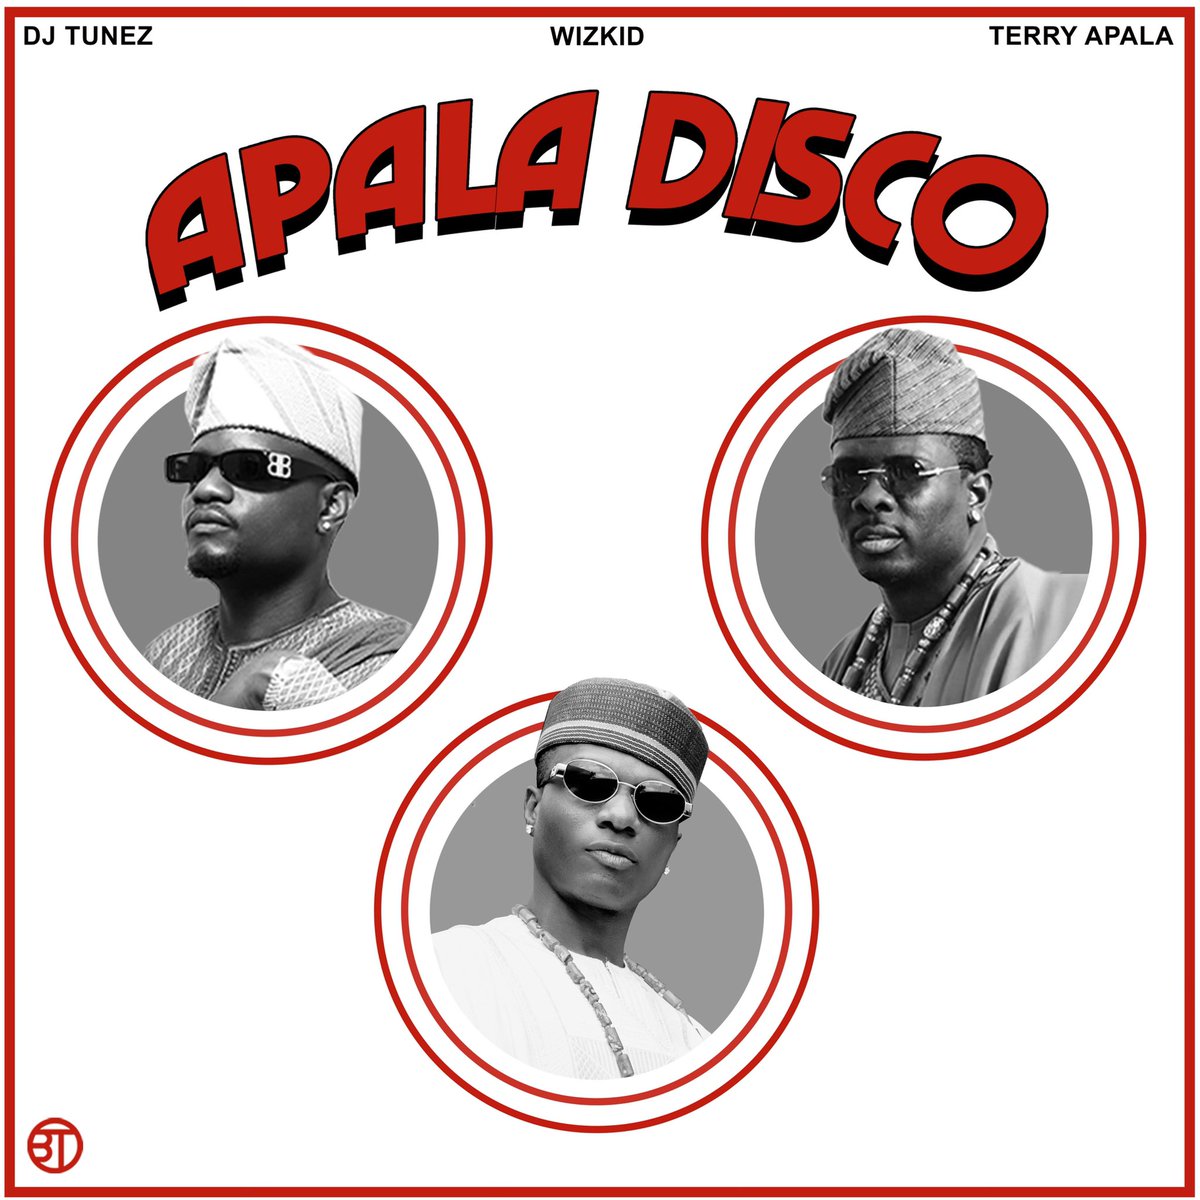 DJ Tunez w/@iam_TerryApala x @wizkidayo “Apala Disco Remix” drops tomorrow. 🌴